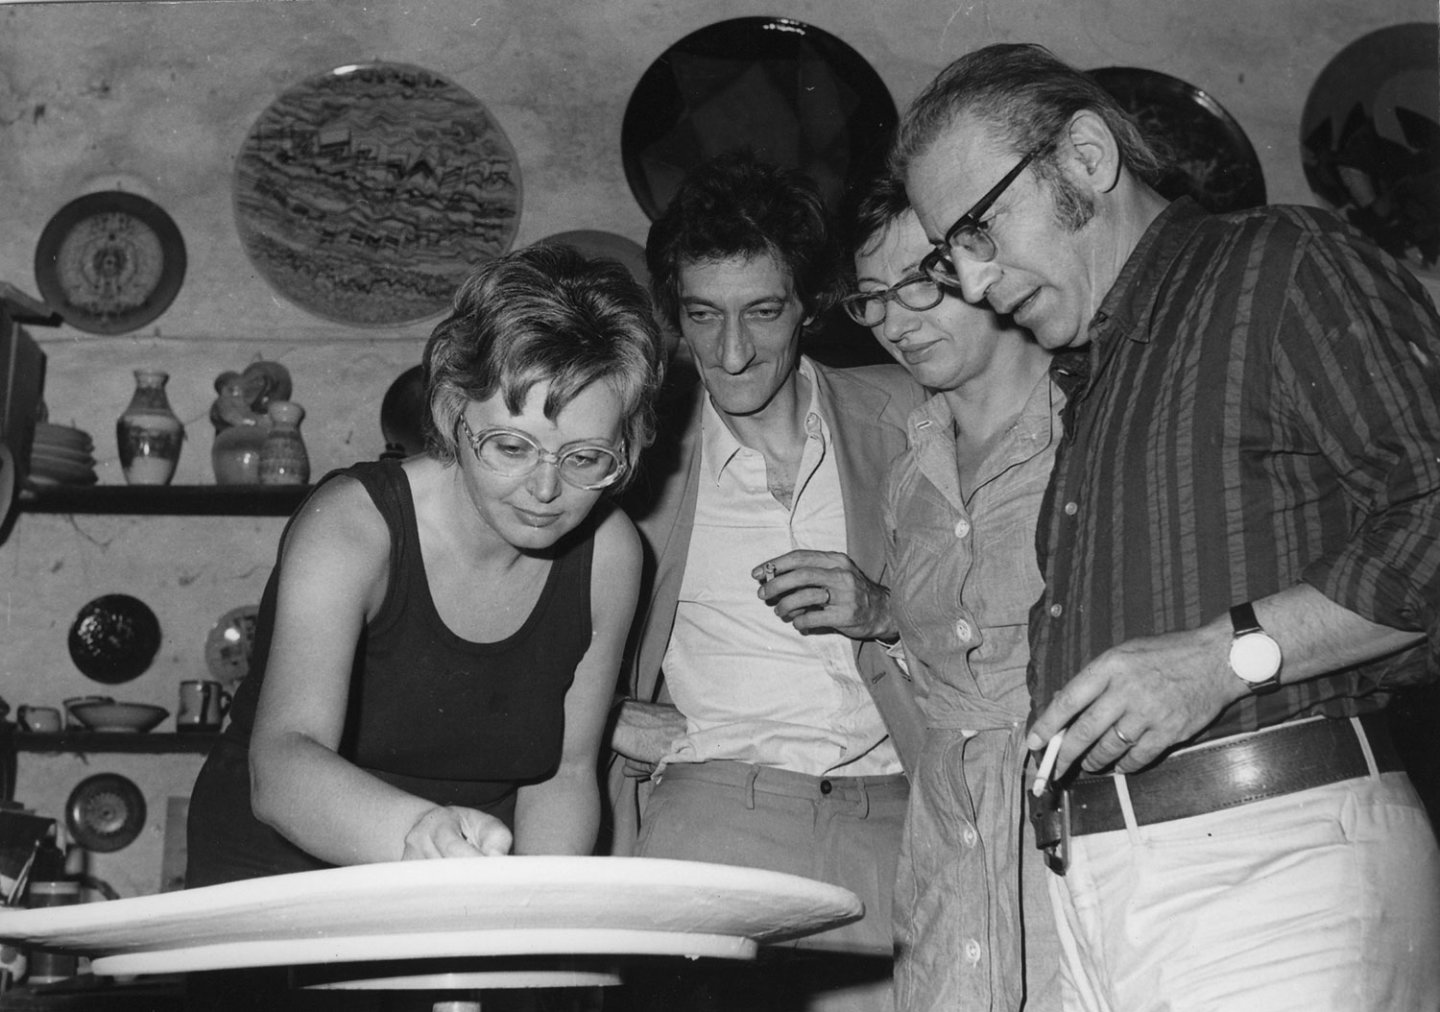 Bianca Pucciarelli Menna, Edoardo Sanguineti con la moglie Luciana e Filiberto Menna, a Vietri sul Mare (SA), 1974. Courtesy Archivio Menna-Binga